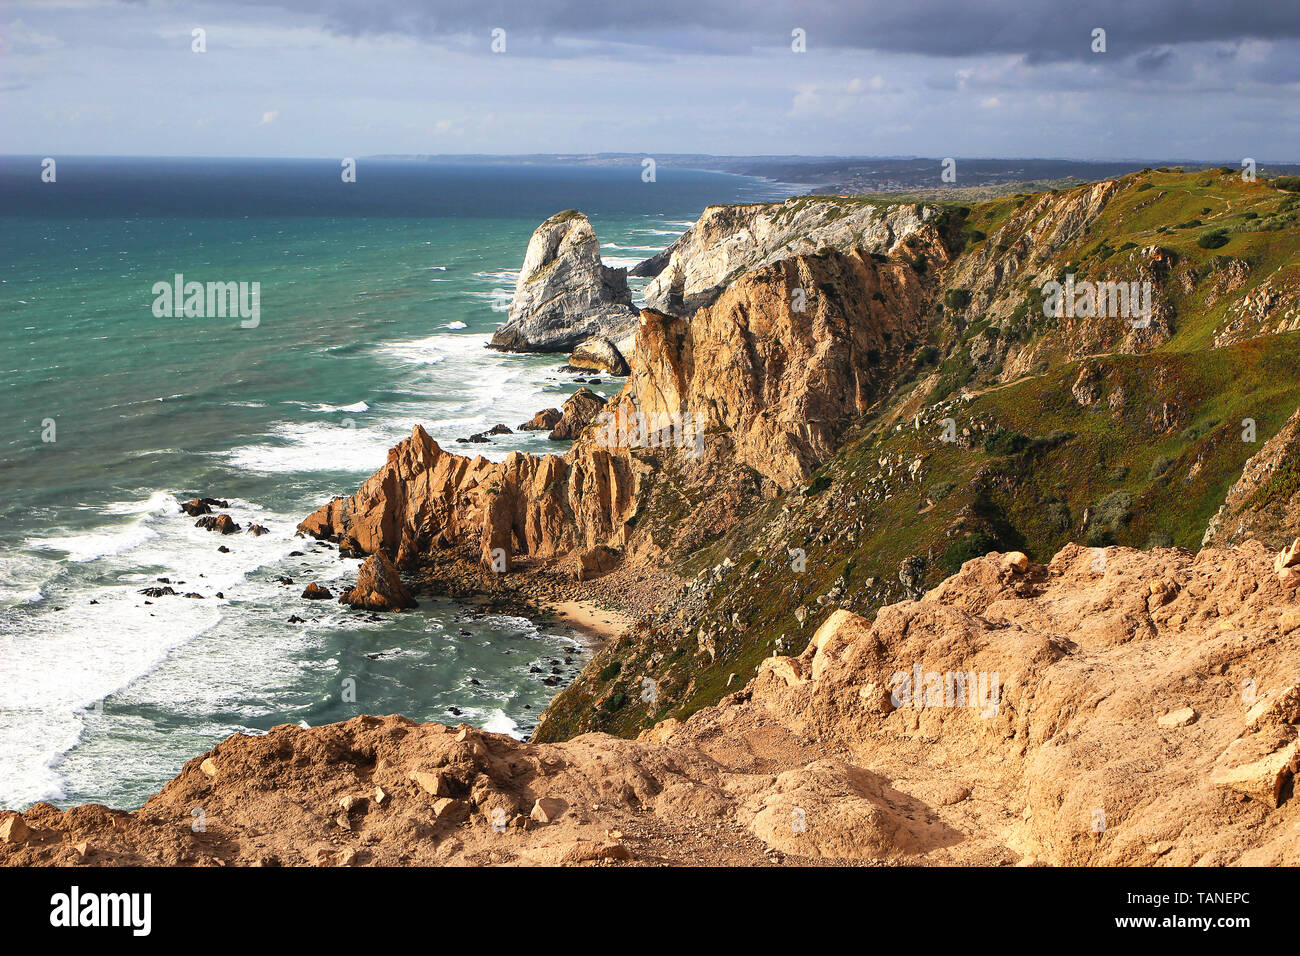 El paisaje de cabo Roca, Cabo da Roca, Sintra, Portugal. El punto más occidental de la Europa continental. Hermosos acantilados, rocas y atlántico salvaje Foto de stock